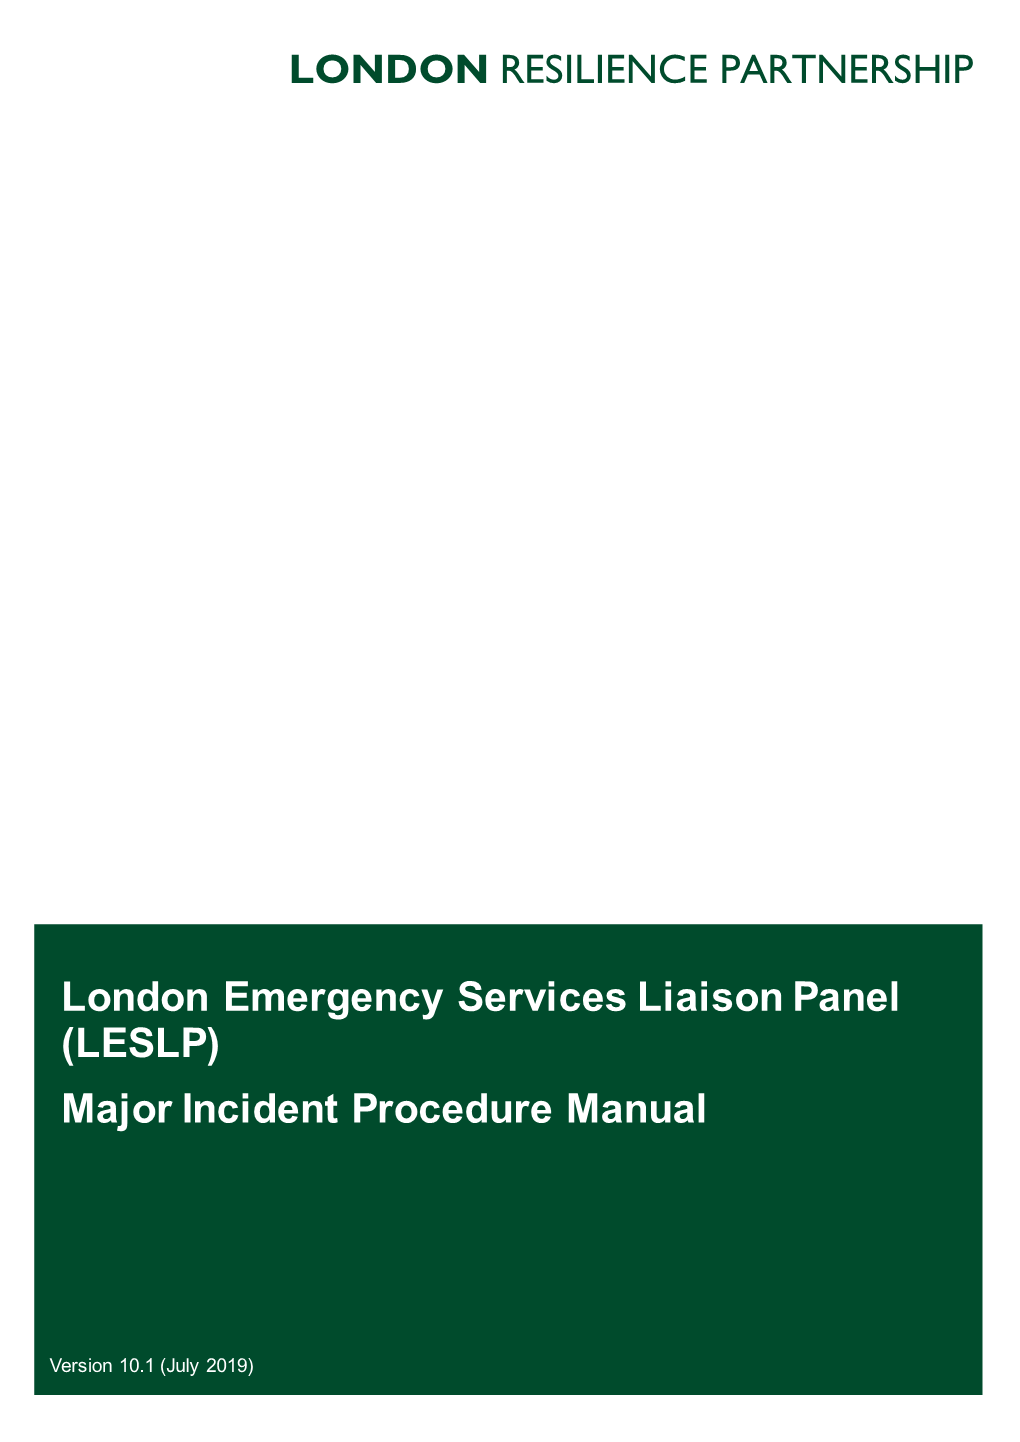 (LESLP) Major Incident Procedure Manual 3